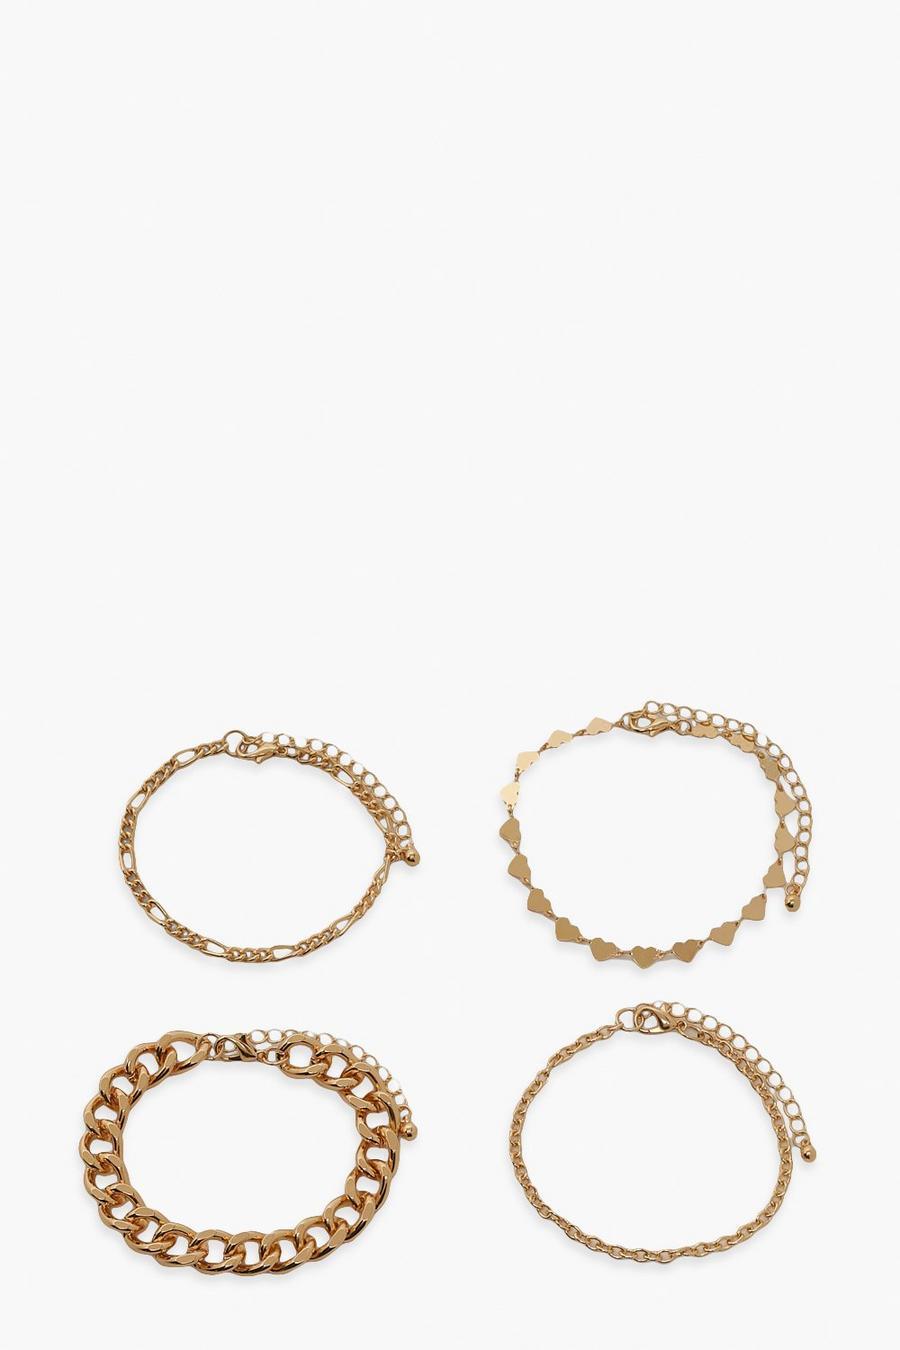 Gold metallic Heart Chain Bracelet Multi Pack